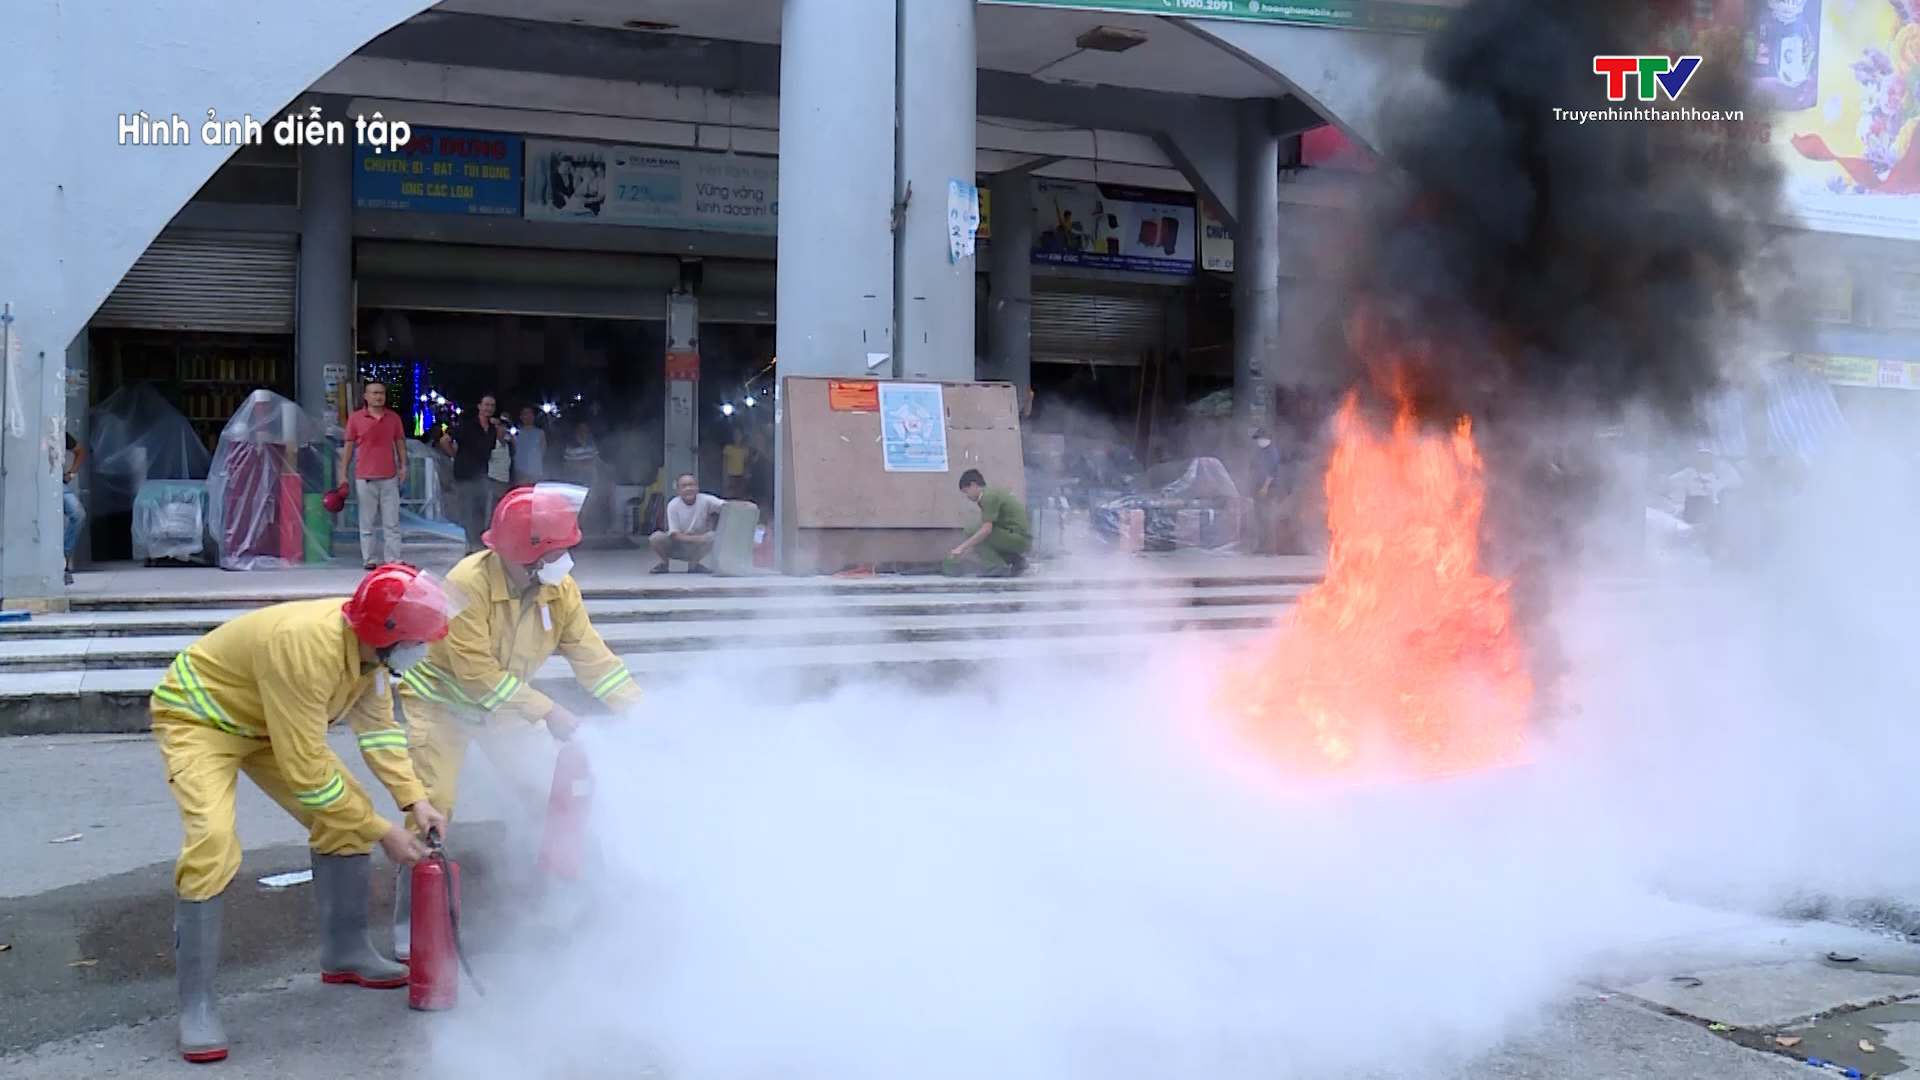 Thực tập phương án chữa cháy, cứu nạn cứu hộ tại chợ Vườn Hoa, thành phố Thanh Hóa - Ảnh 2.